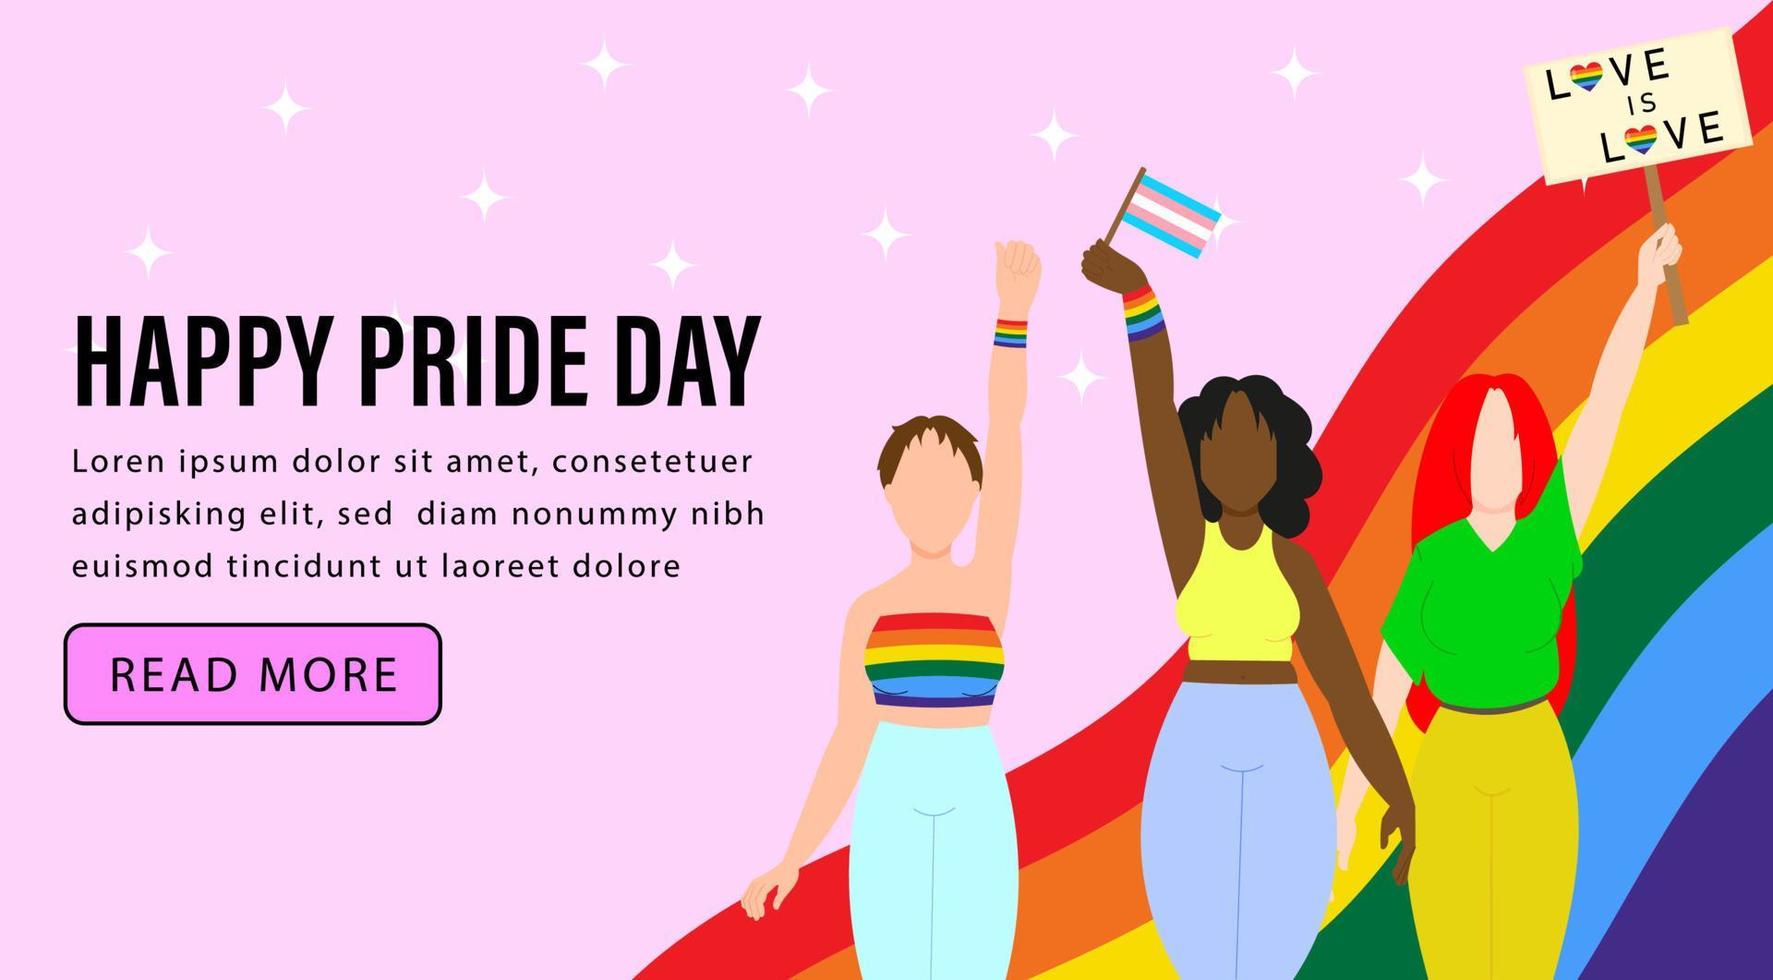 parata del gay pride. le lesbiche partecipano all'orgoglio lgbt. illustrazione vettoriale in uno stile piatto. modello di banner lgbtq su sfondo rosa.